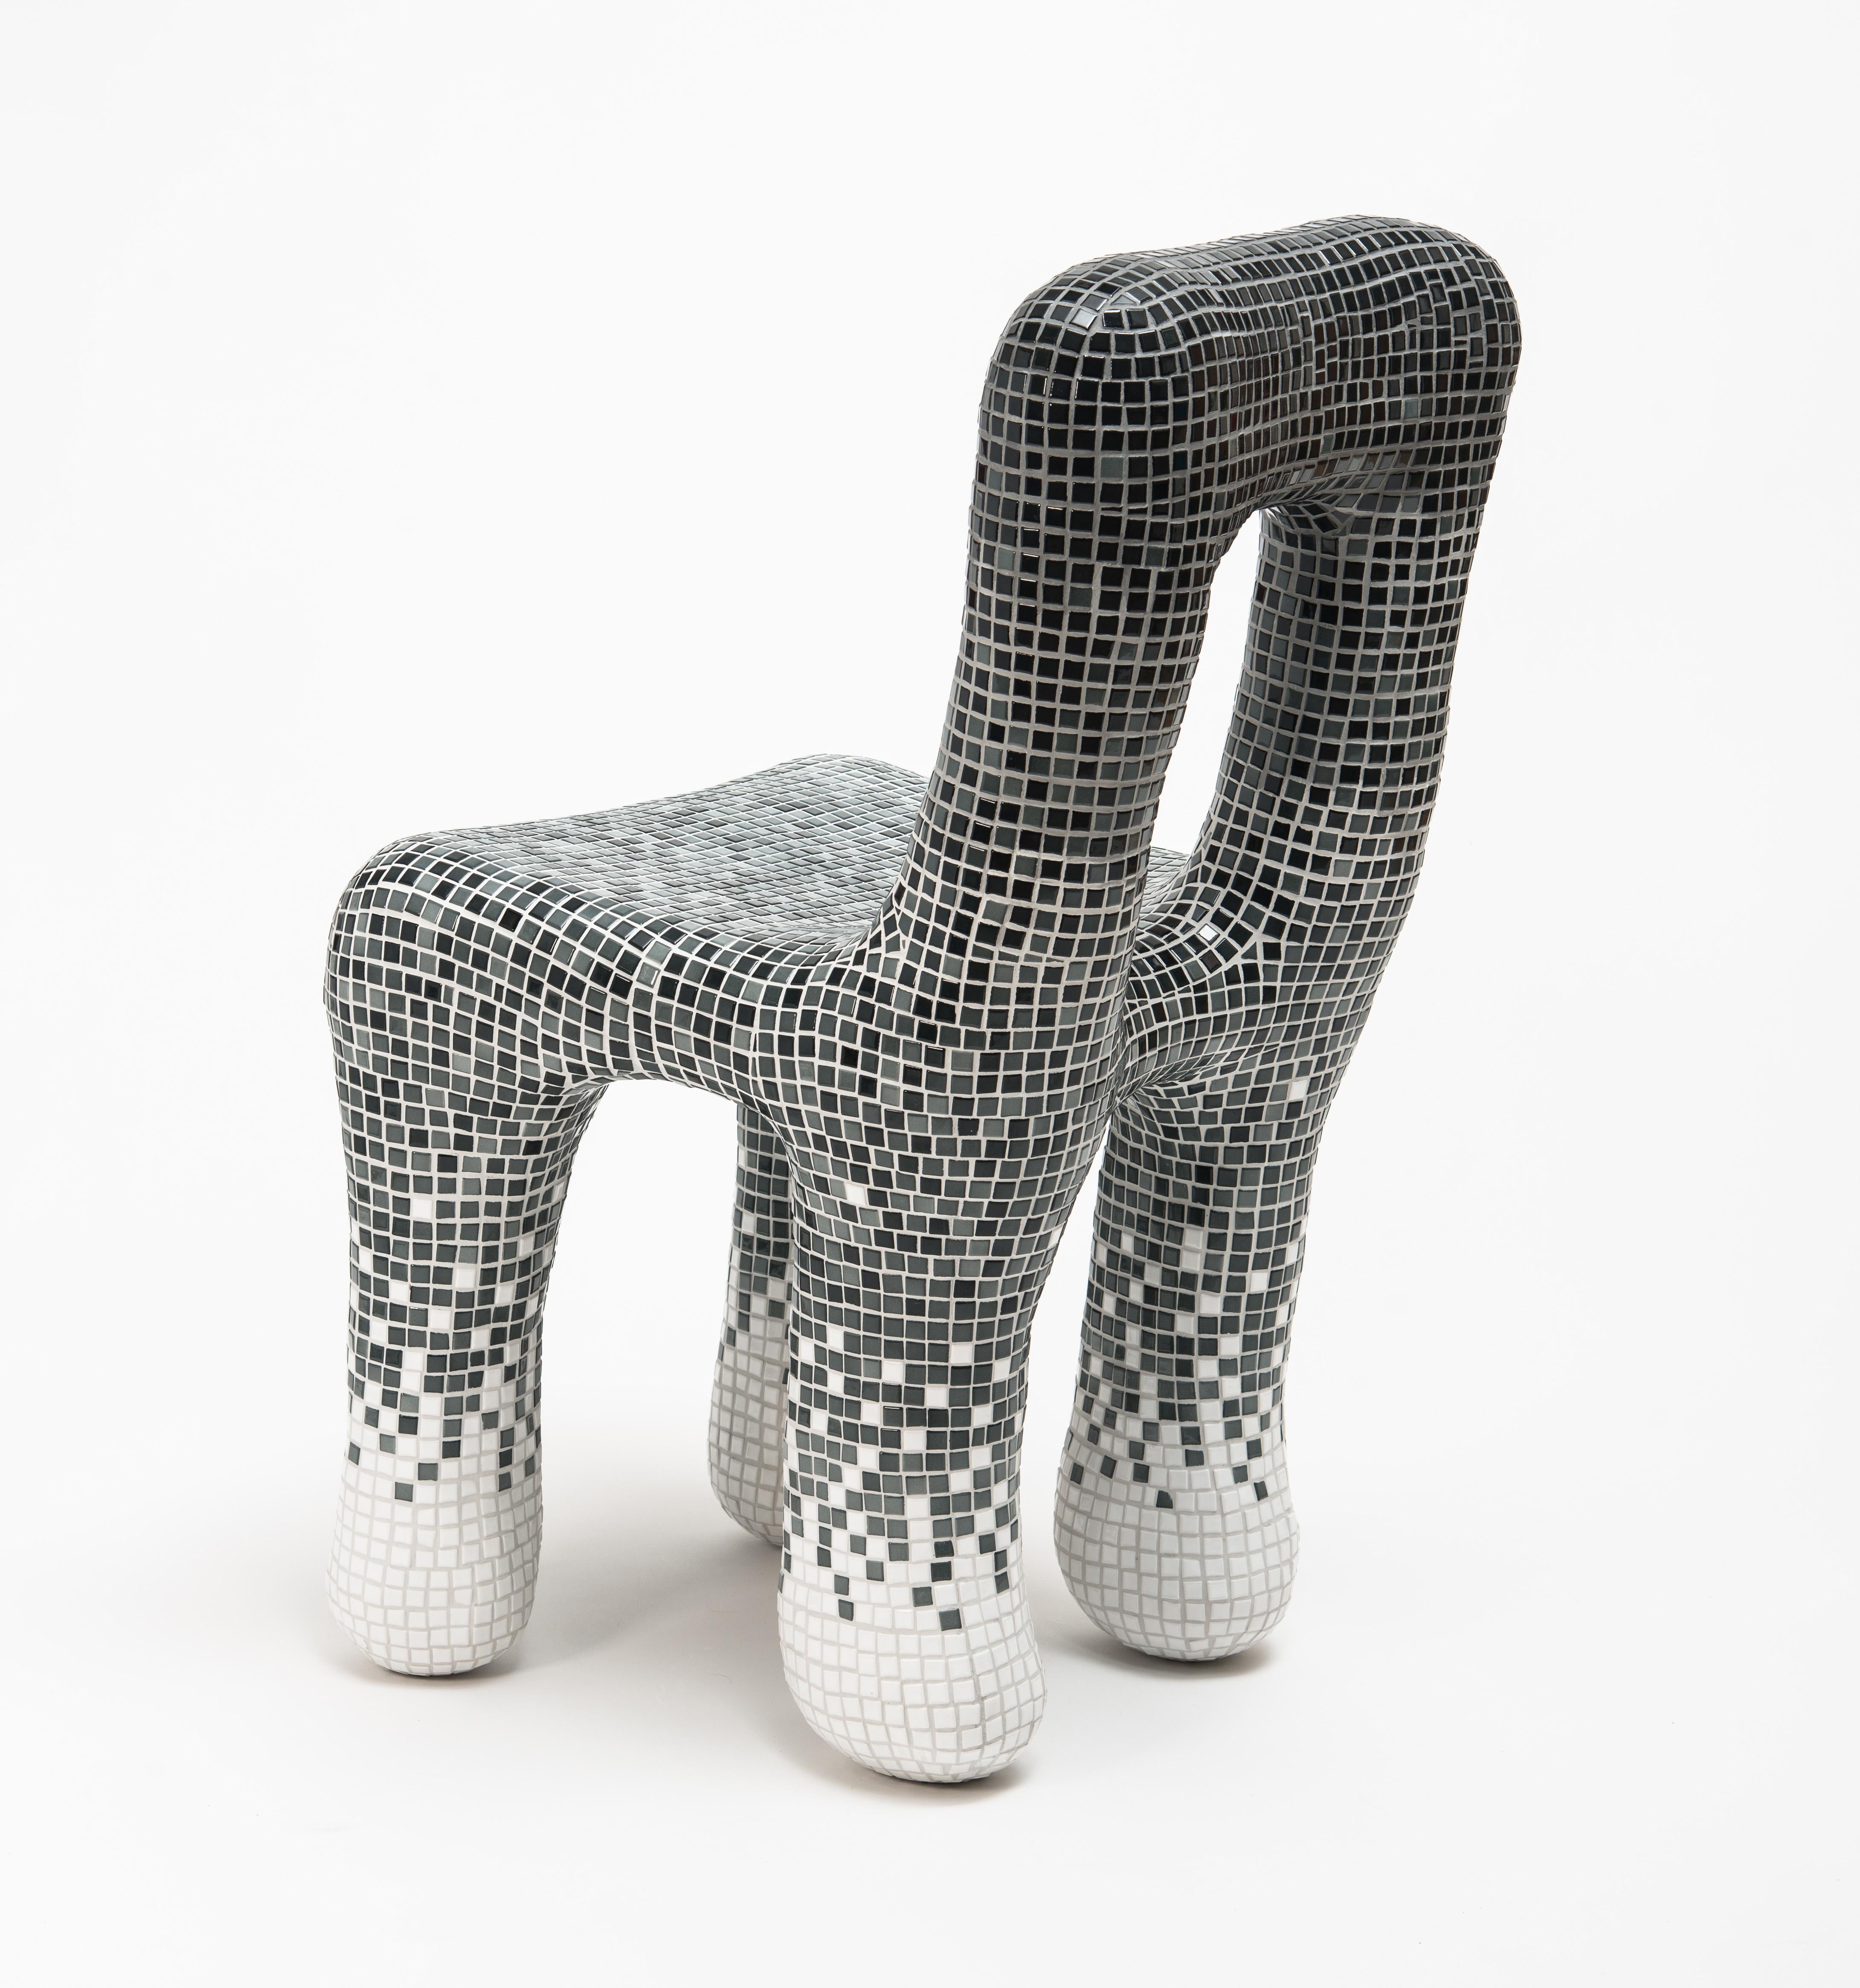 Austrian Gradient Tiles Chair by Philipp Aduatz